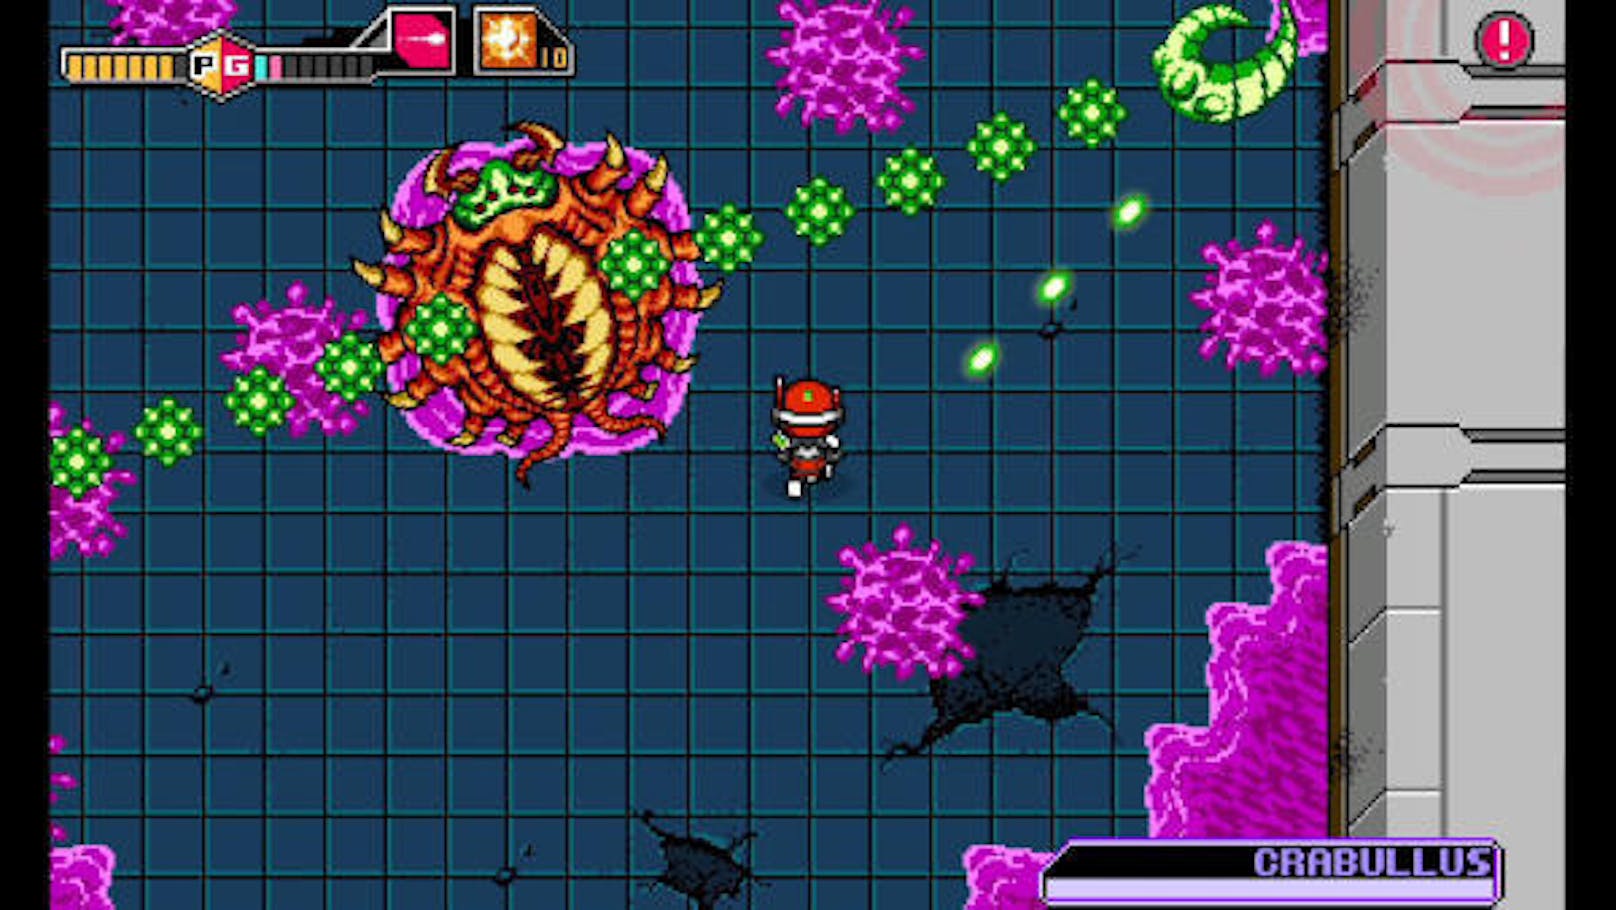 Arcade-Action, Pixelgrafik und 80er-Synthiegefiepse: Blaster Master Zero ist eine Referenz an die Game-Kinderstube.